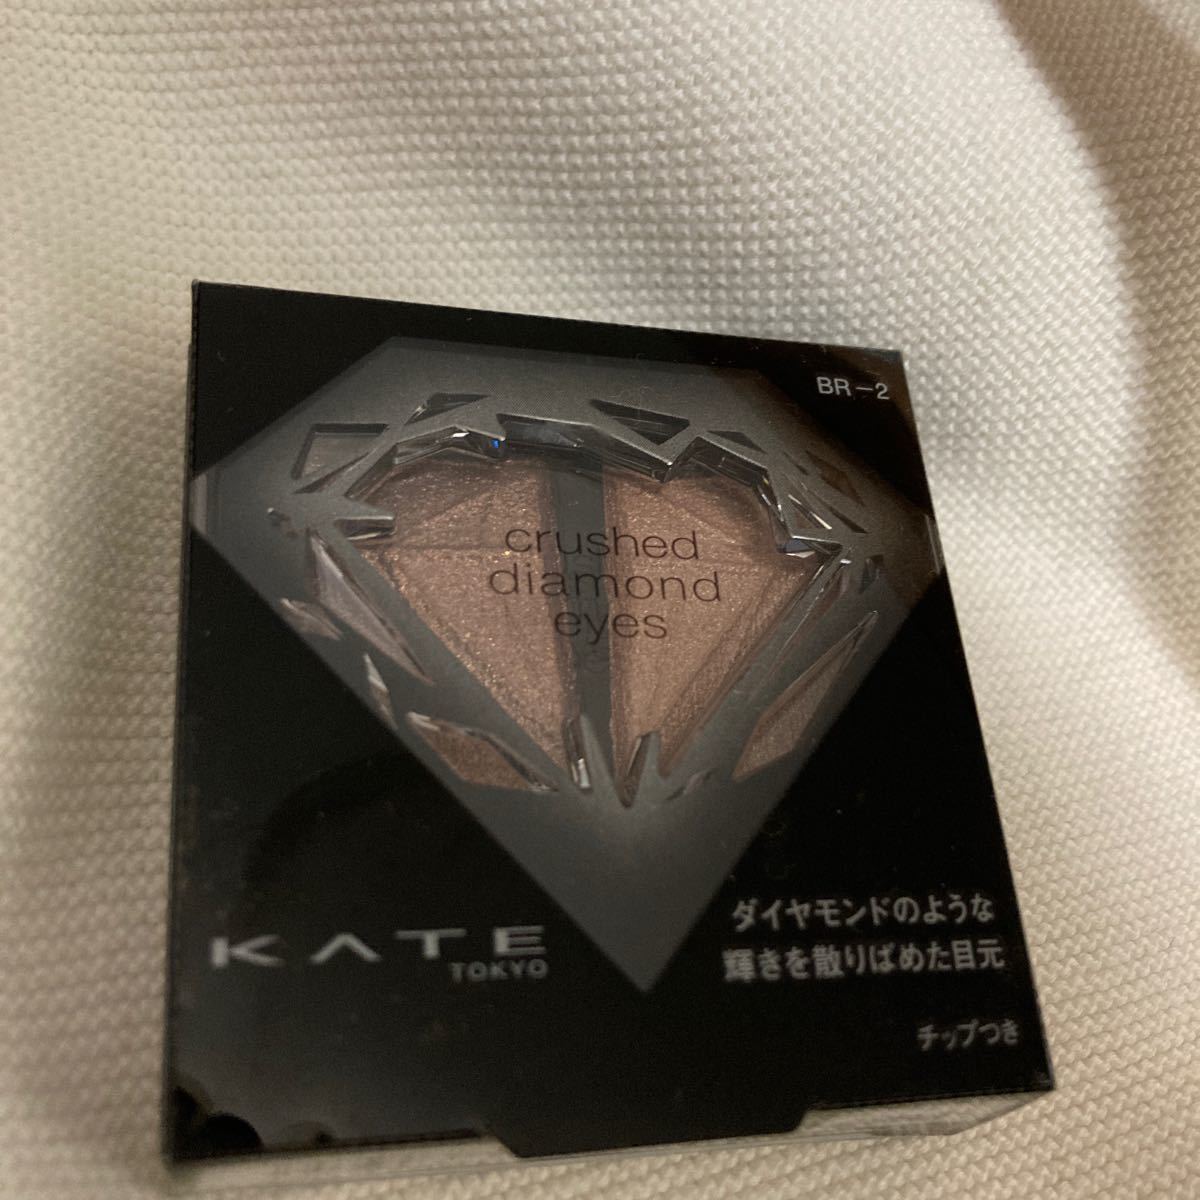 《カネボウ》 KATE ケイト クラッシュダイヤモンドアイズ BR-2 シックブラウン 2.2g